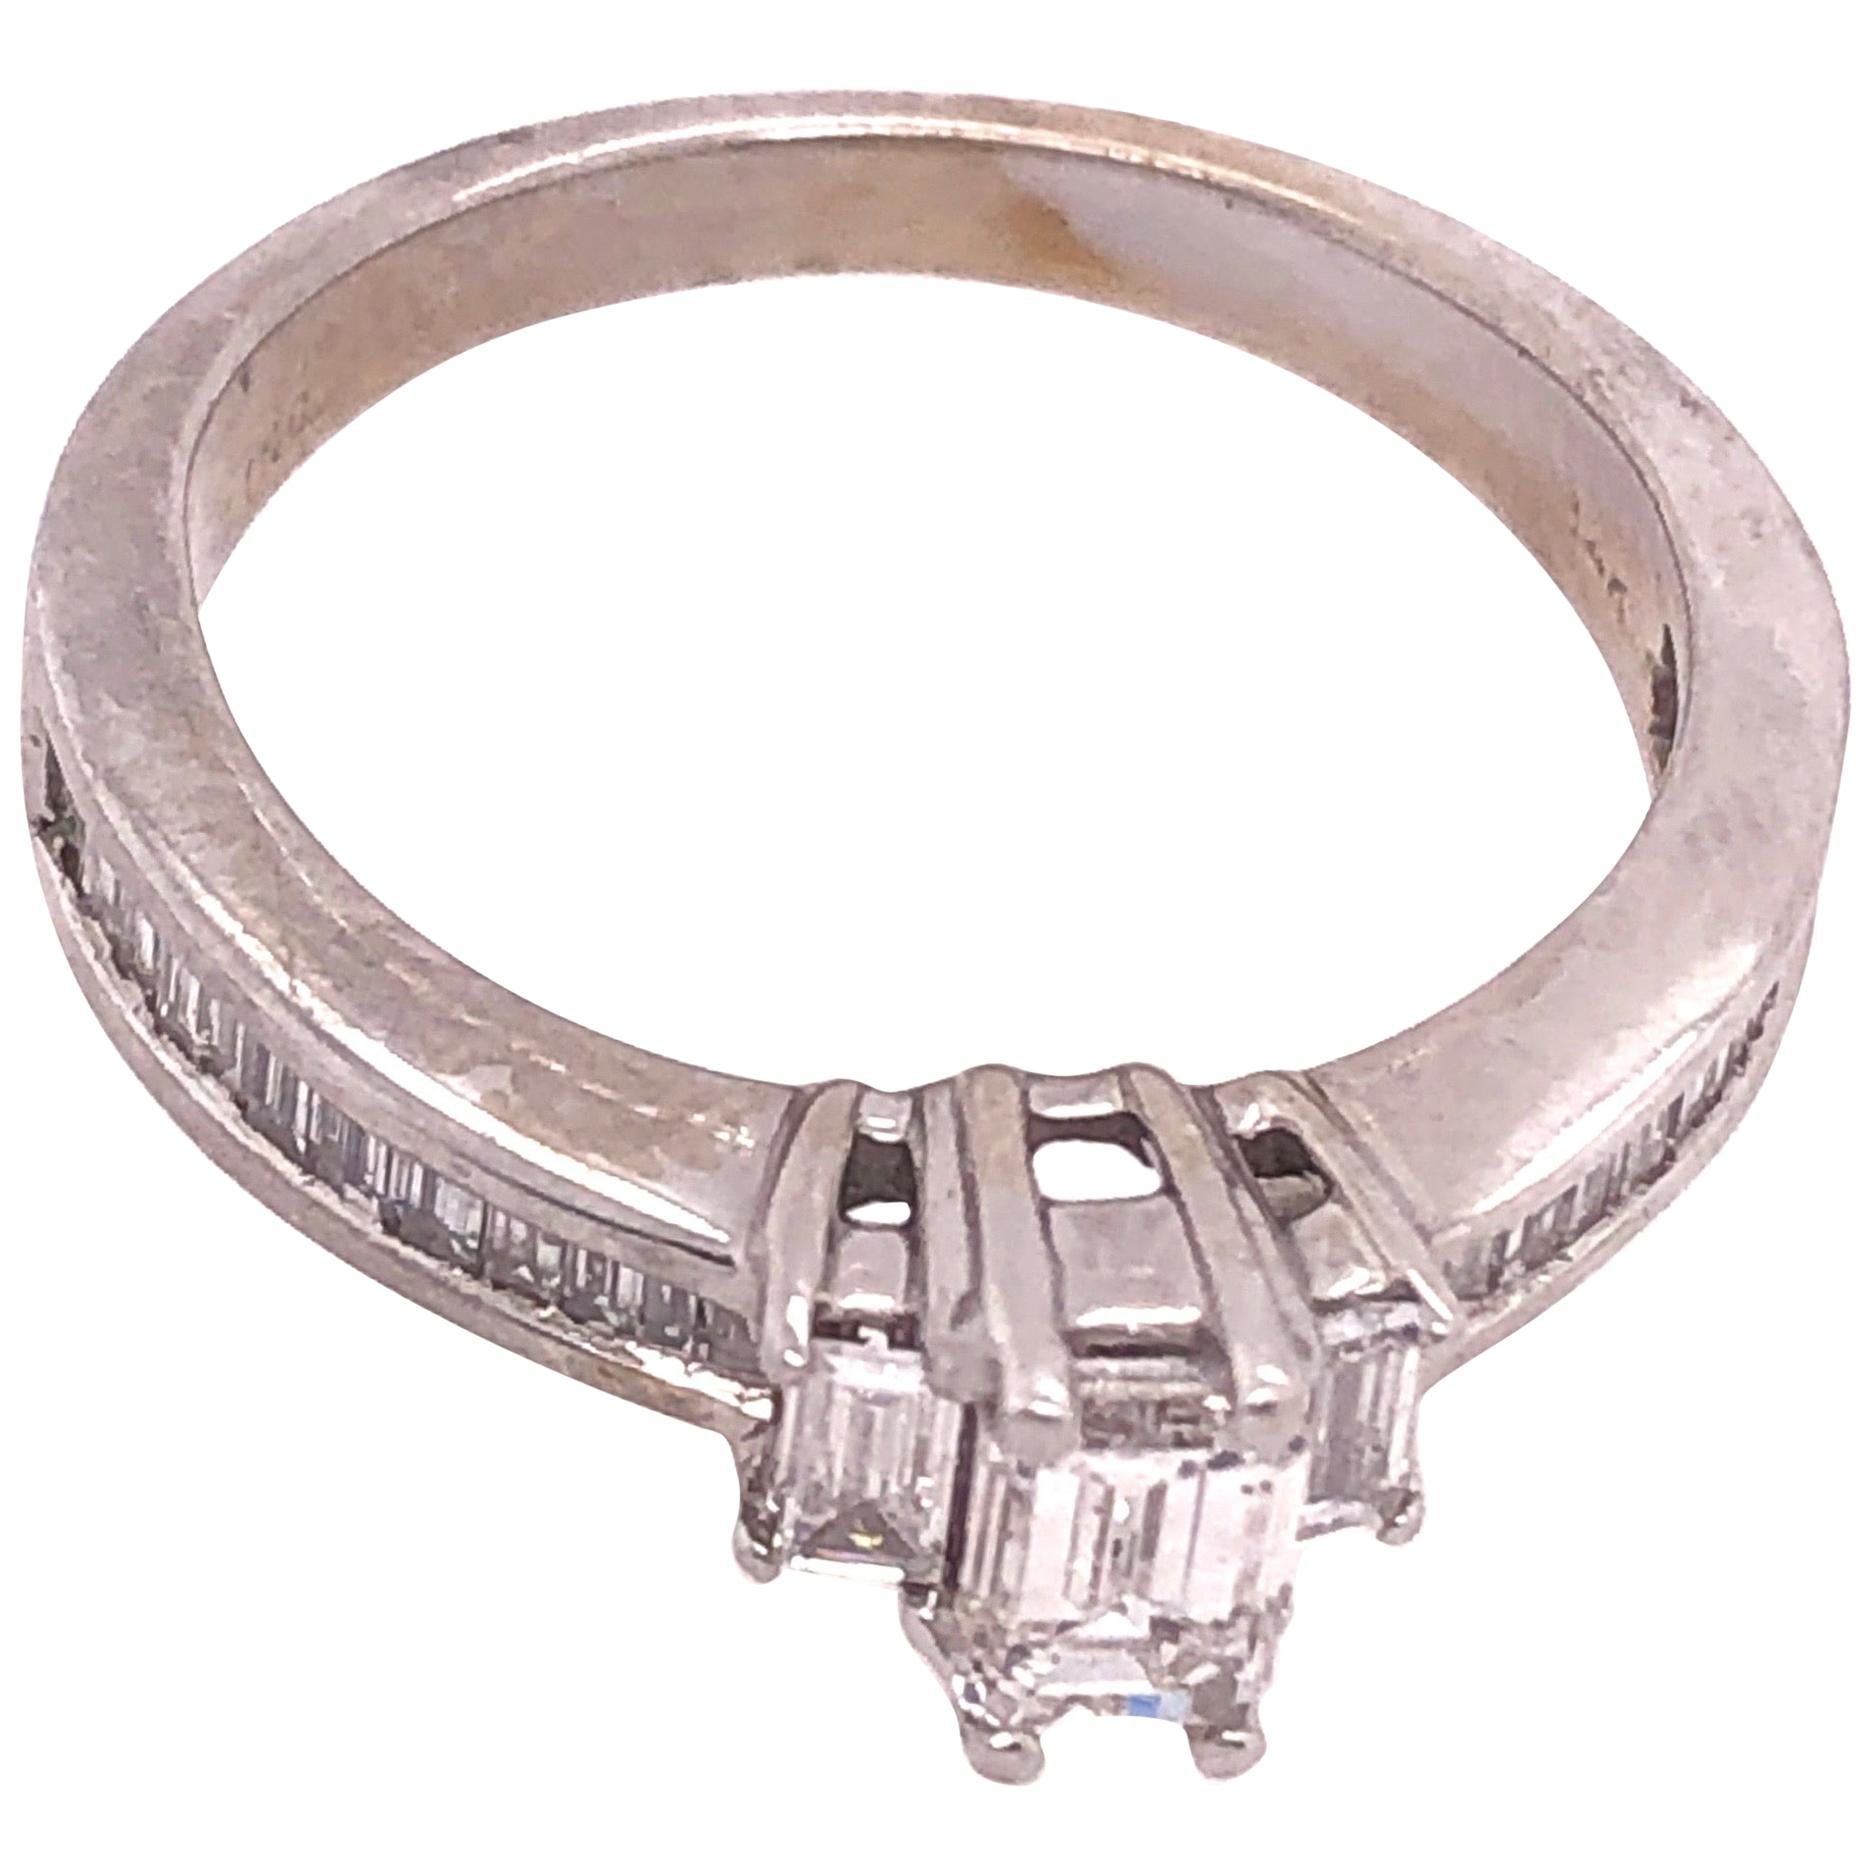 14 Karat White Gold Engagement Ring Bridal Ring 0.75 Total Diamond Weight